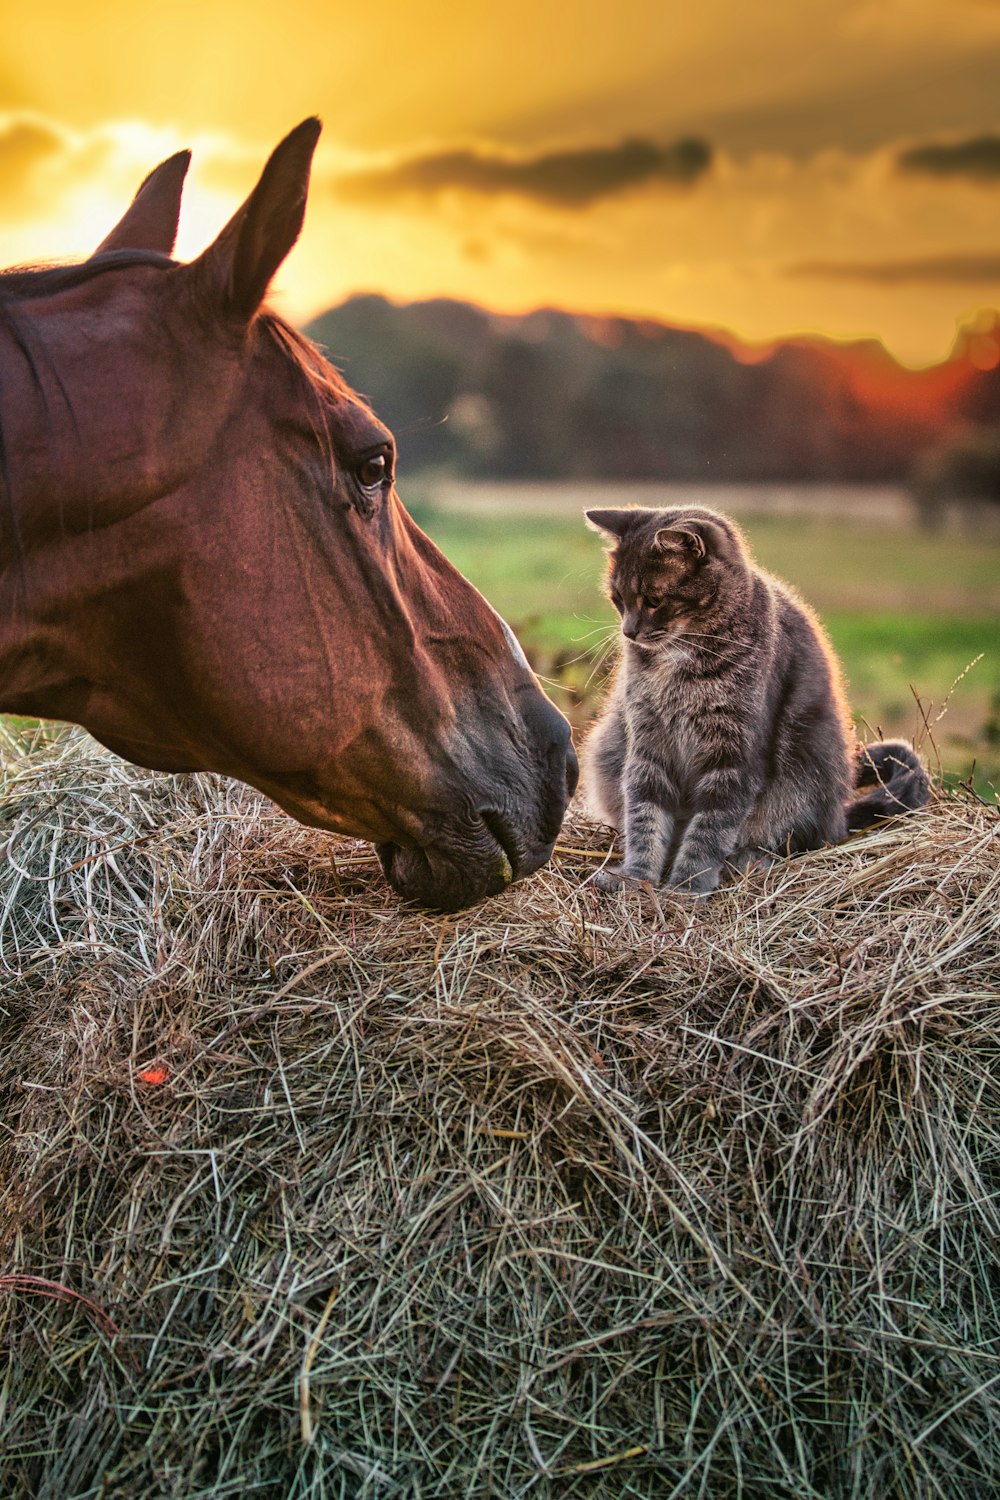 eine Katze, die auf einem Heuhaufen neben einem Pferd sitzt